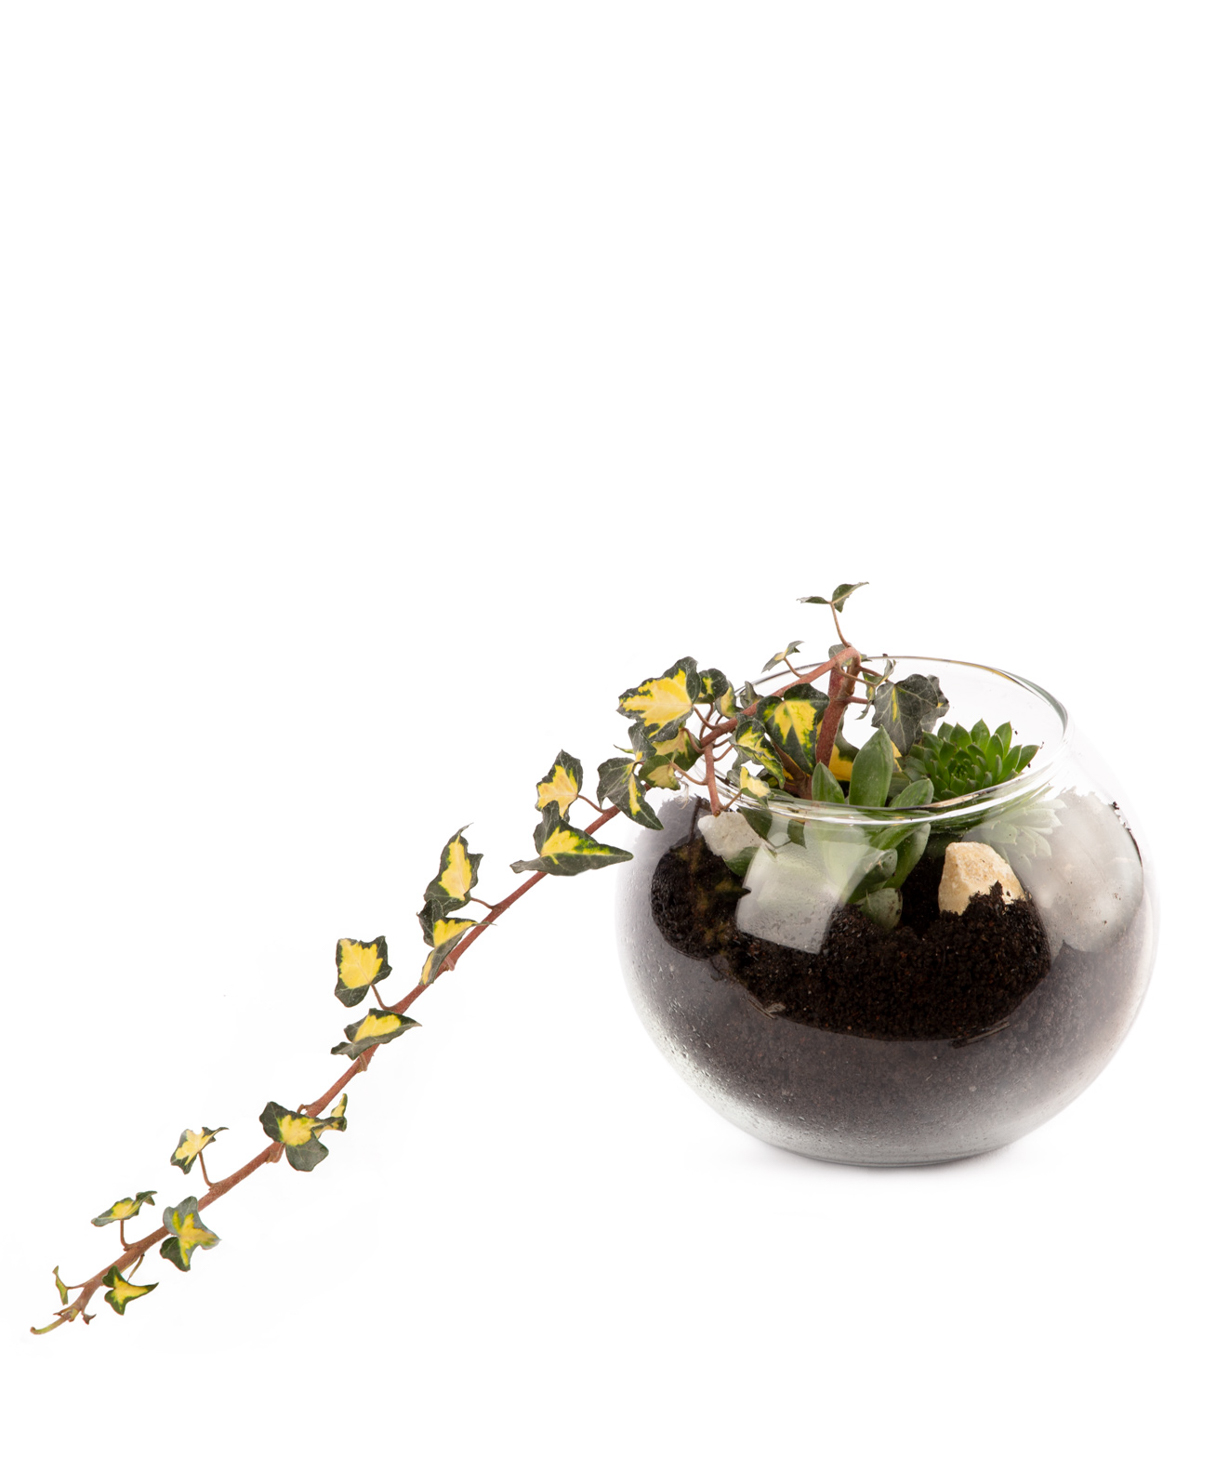 Florarium `Altoona` with succulents